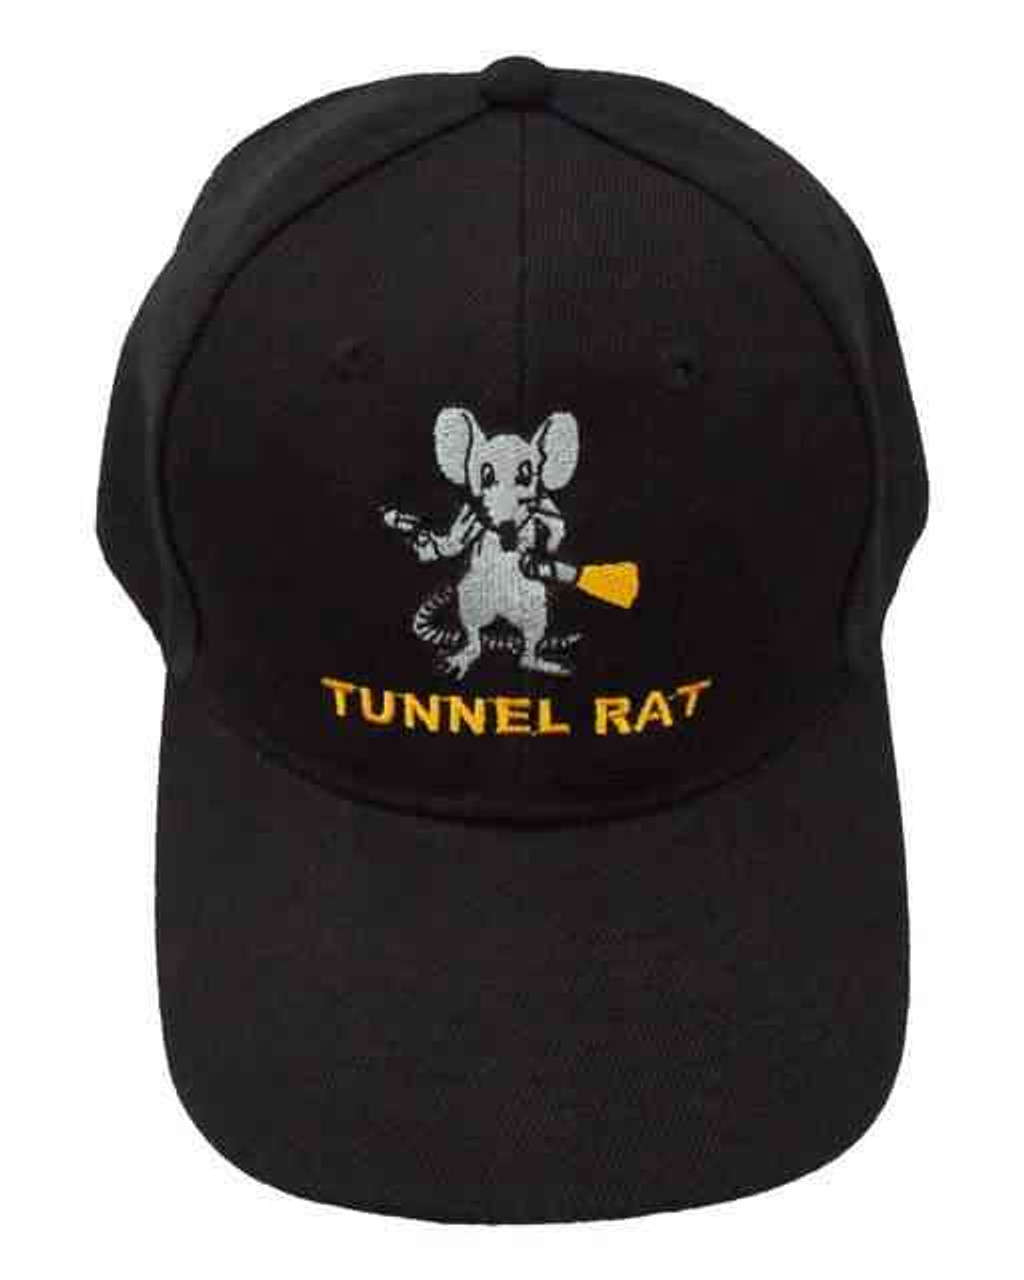 tunnel rat hat